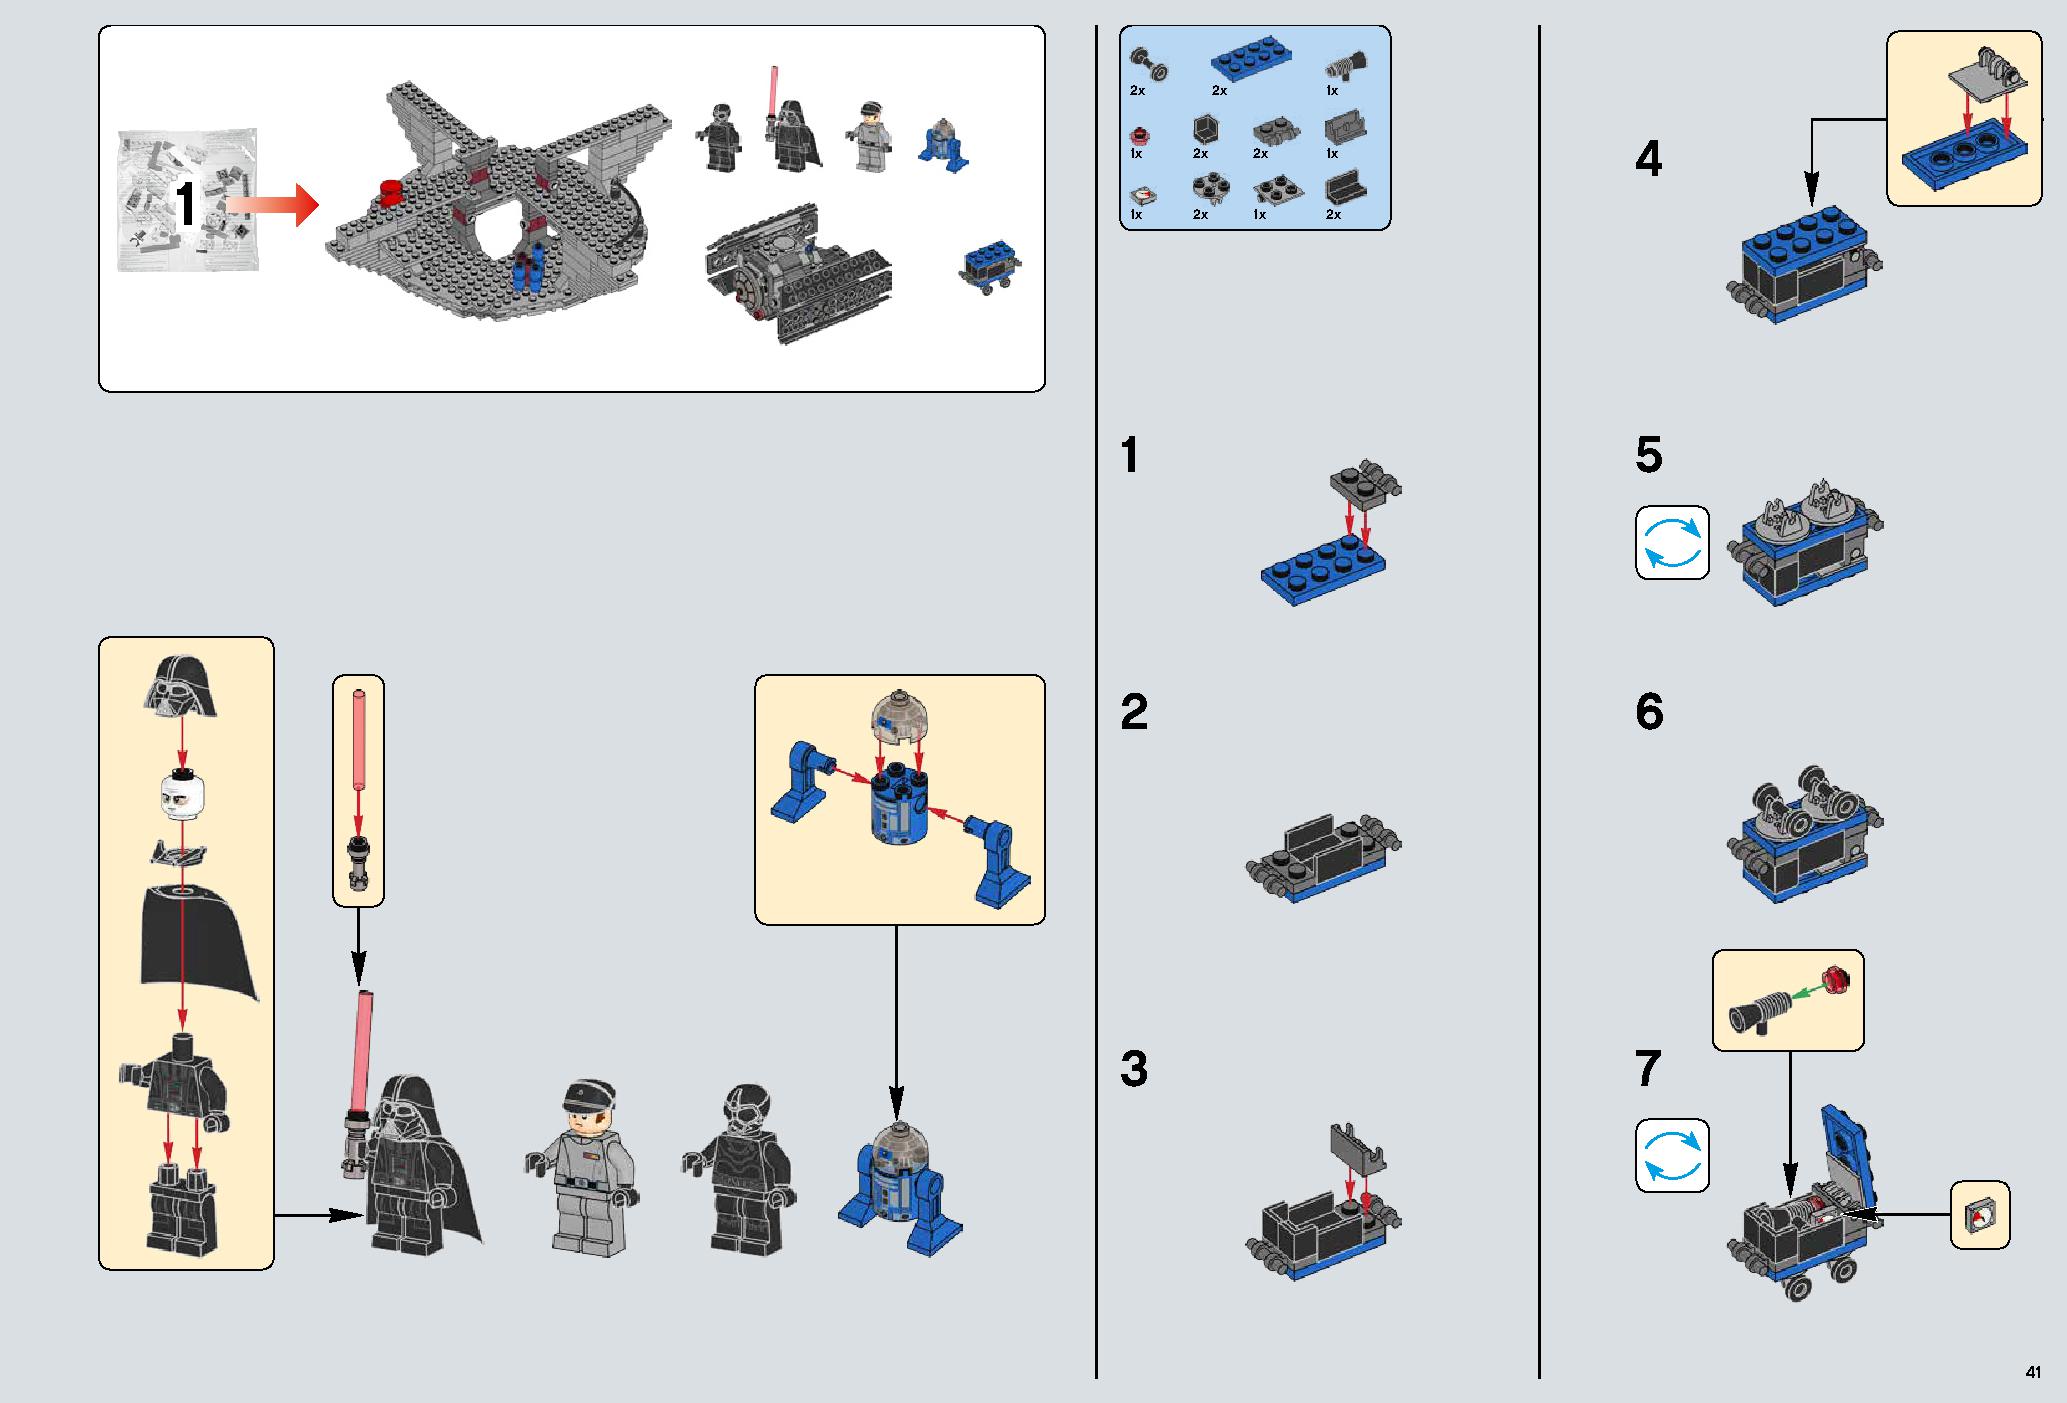 デス・スター 75159 レゴの商品情報 レゴの説明書・組立方法 41 page